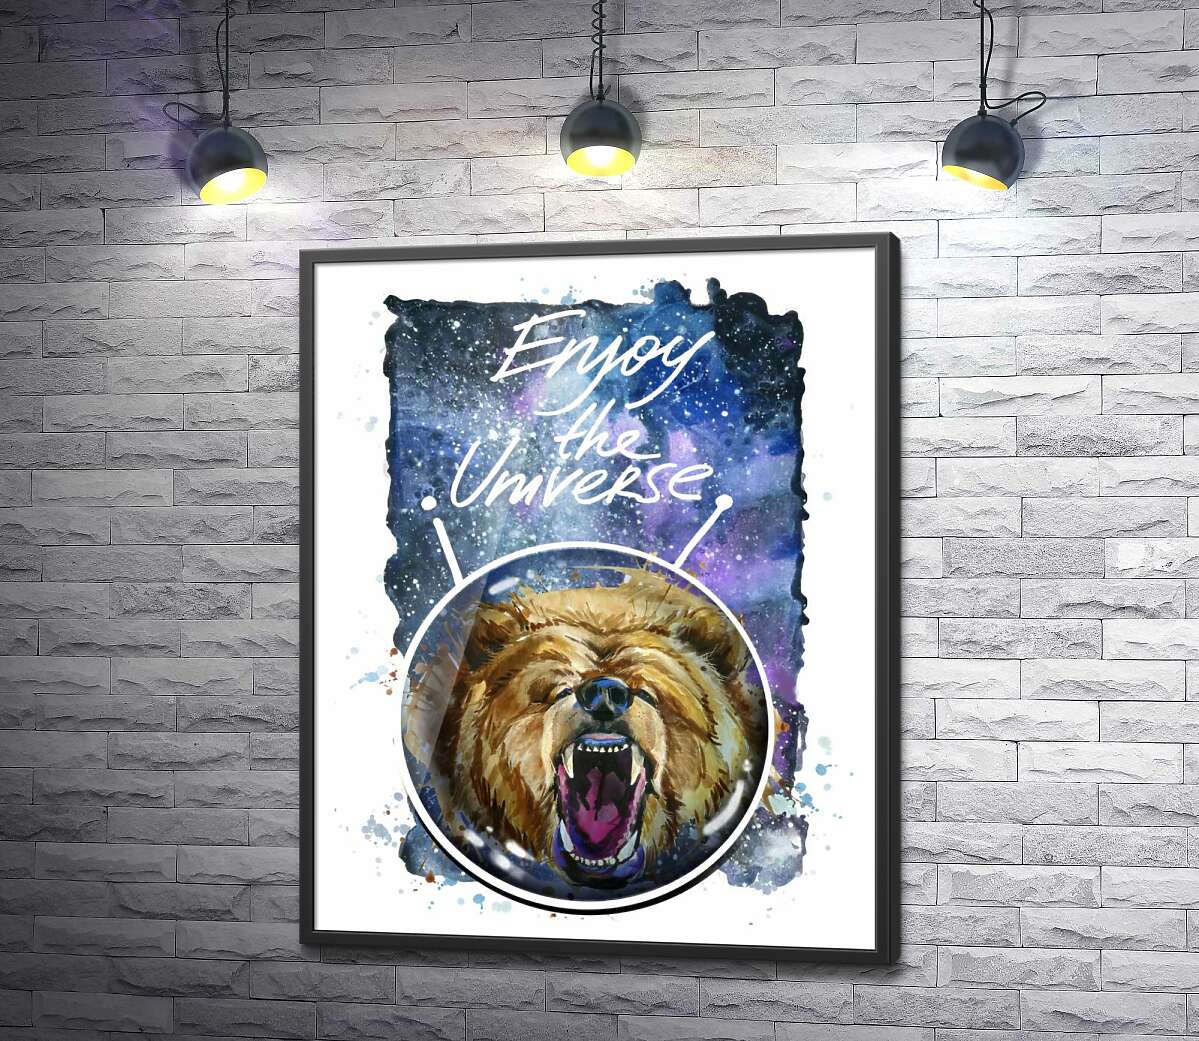 постер Медведь в шлеме космонавта с надписью "Enjoy the Universe"